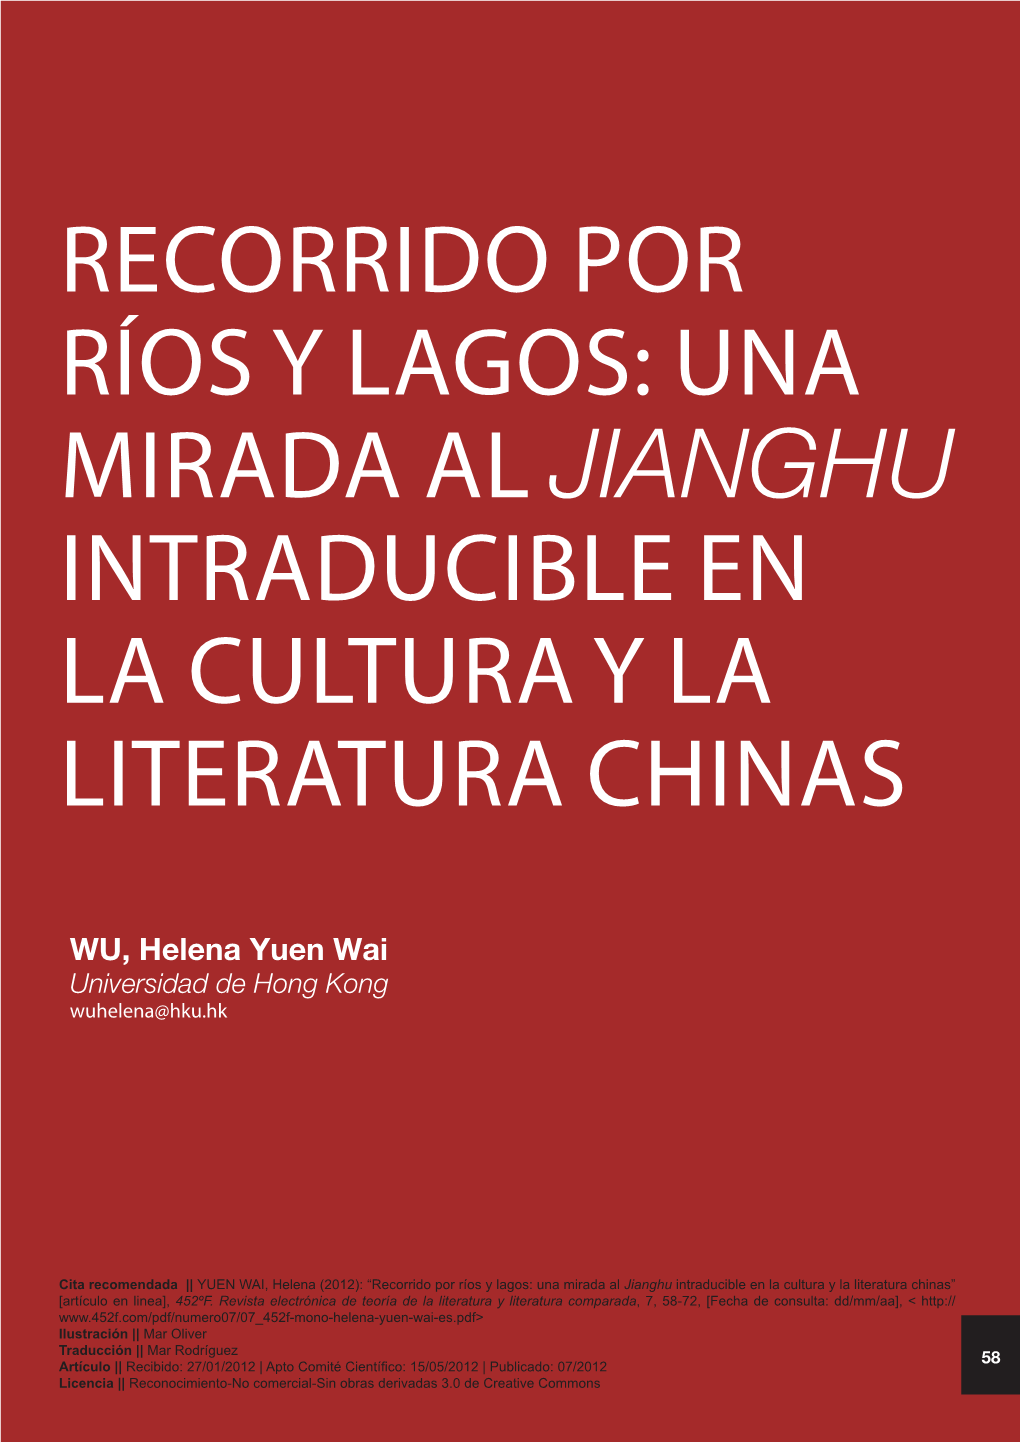 Recorrido Por Ríos Y Lagos: Una Mirada Al Jianghu Intraducible En La Cultura Y La Literatura Chinas